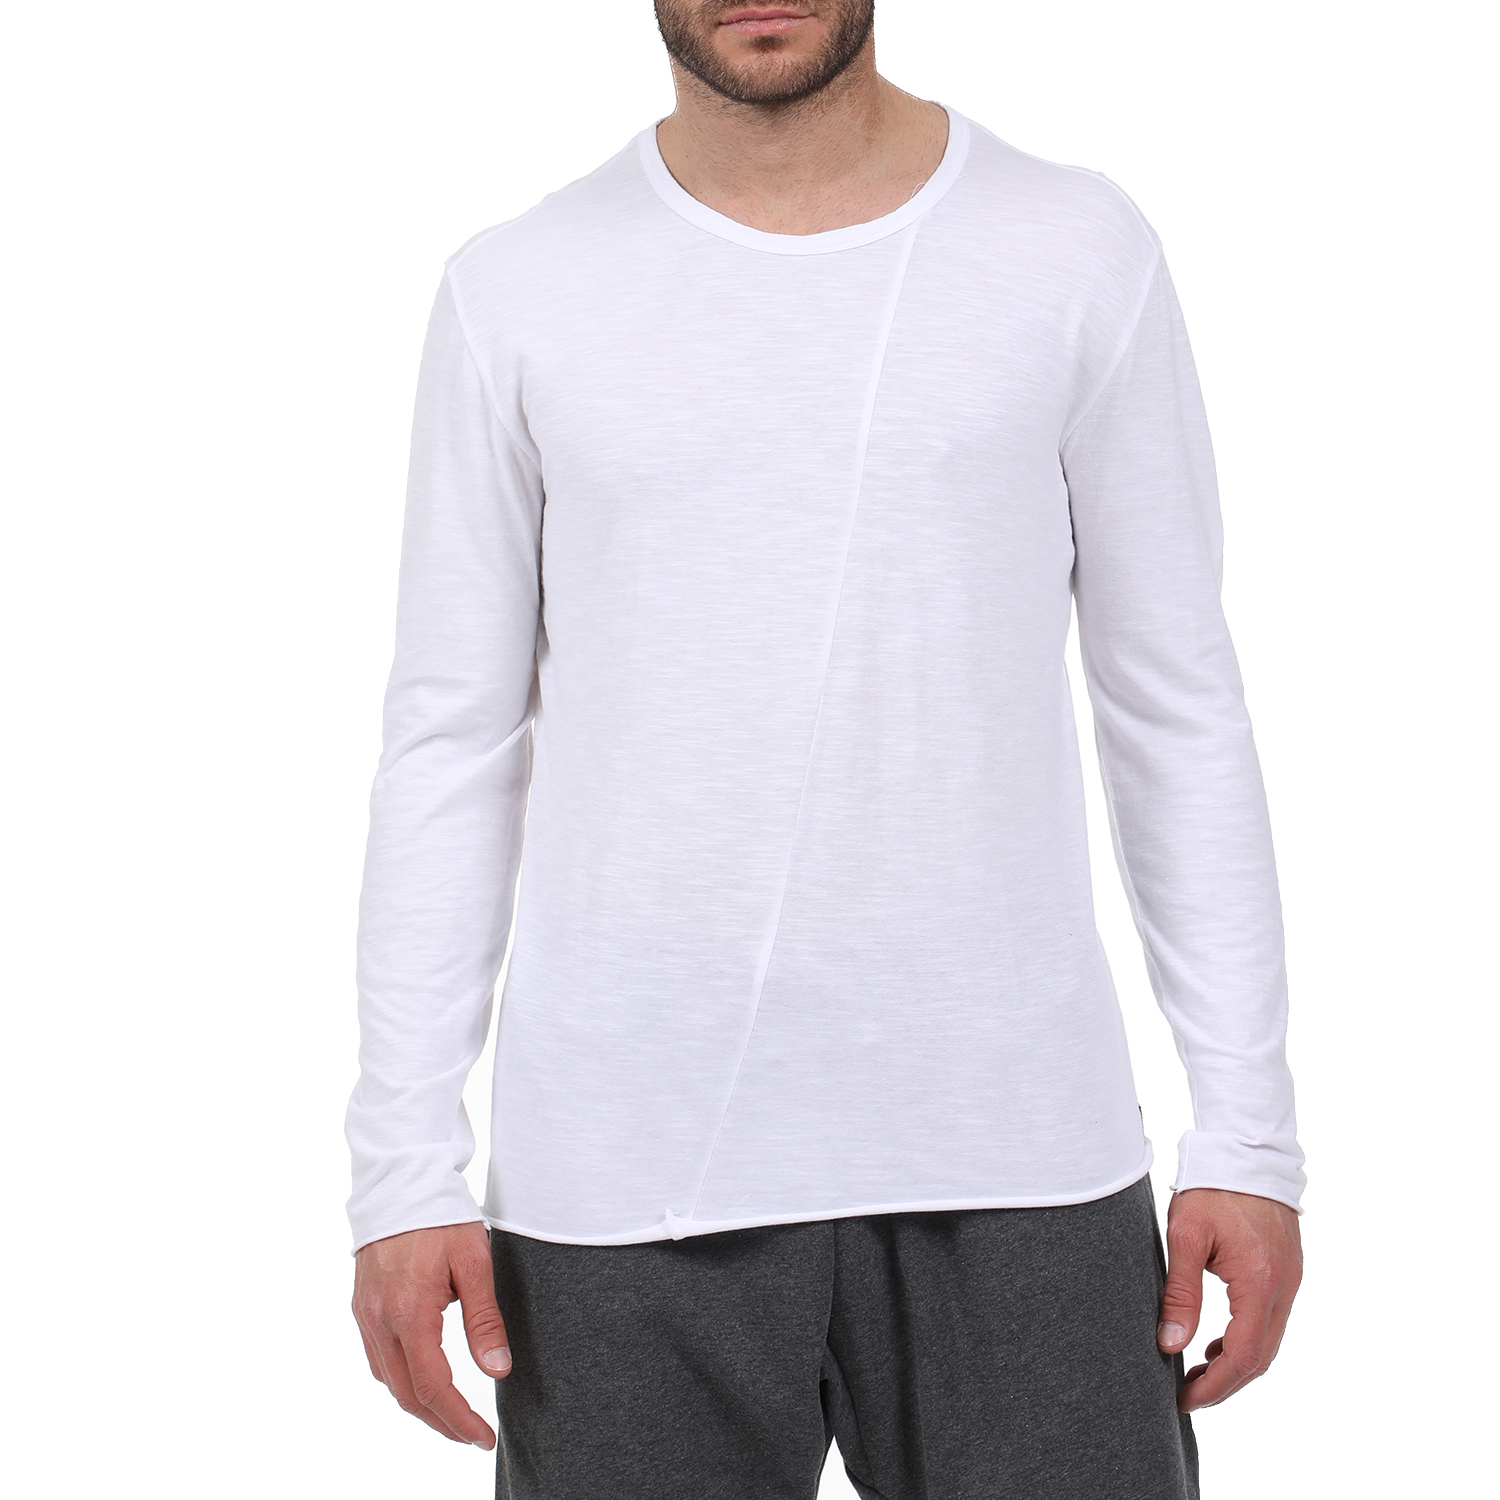 Ανδρικά/Ρούχα/Μπλούζες/Μακρυμάνικες DIRTY LAUNDRY - Ανδρική μακρυμάνικη μπλούζα DIRTY LAUNDRY λευκή